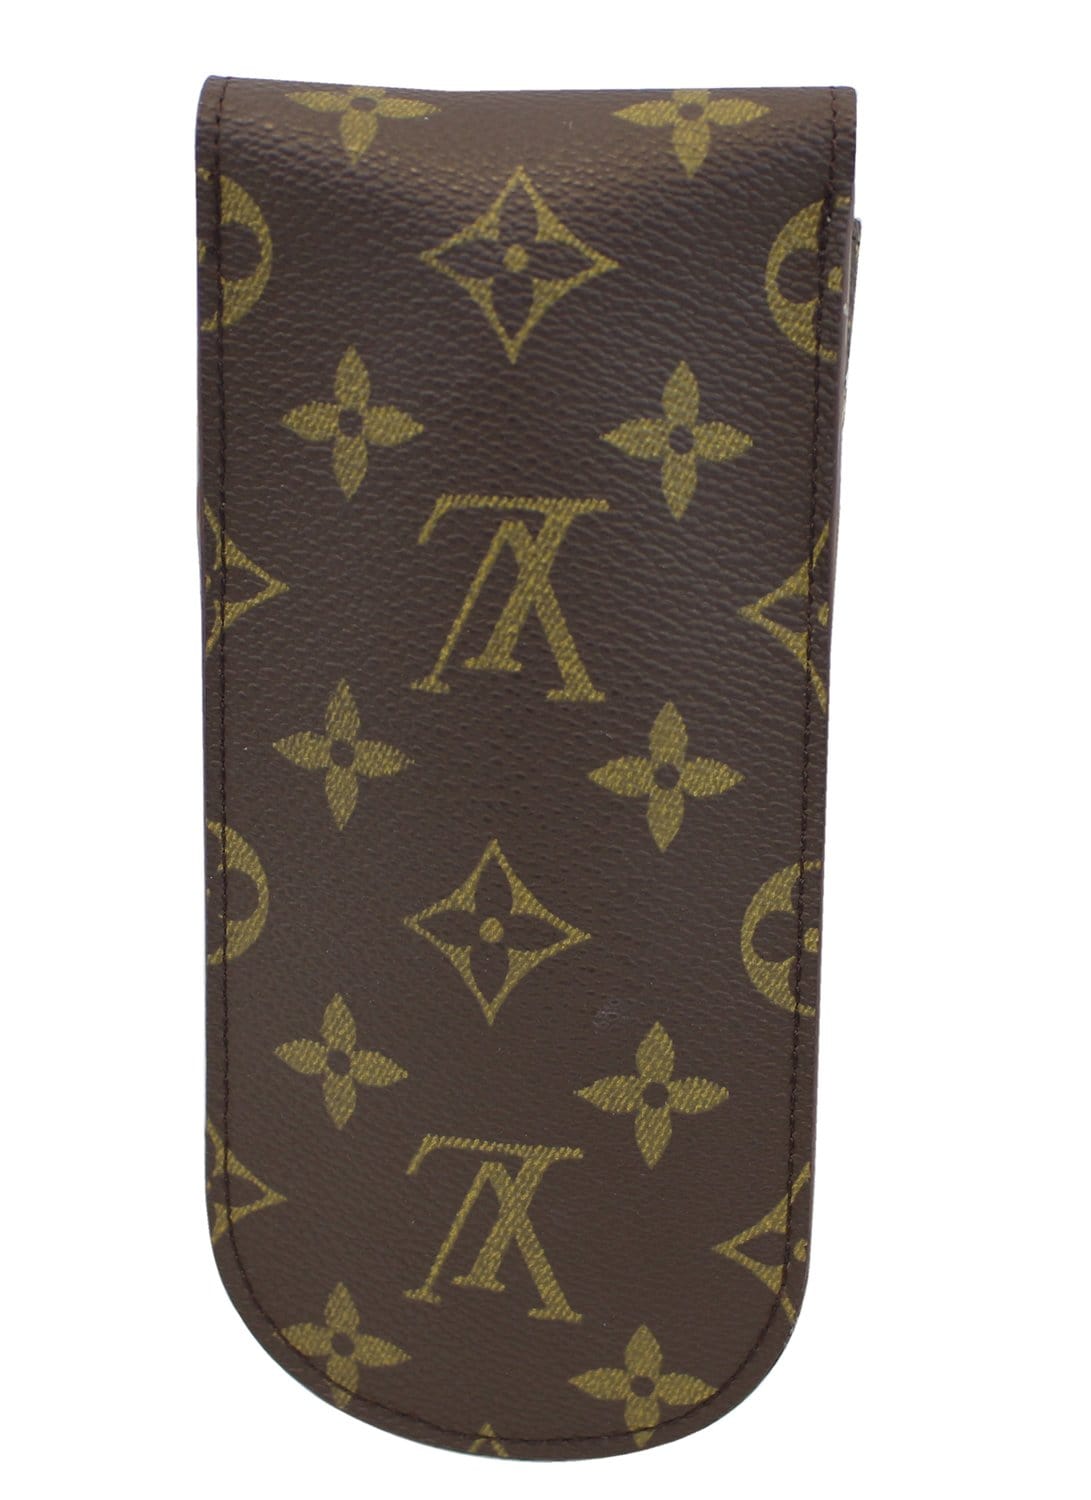 Sold at Auction: Louis Vuitton, Louis Vuitton, a monogram pen case